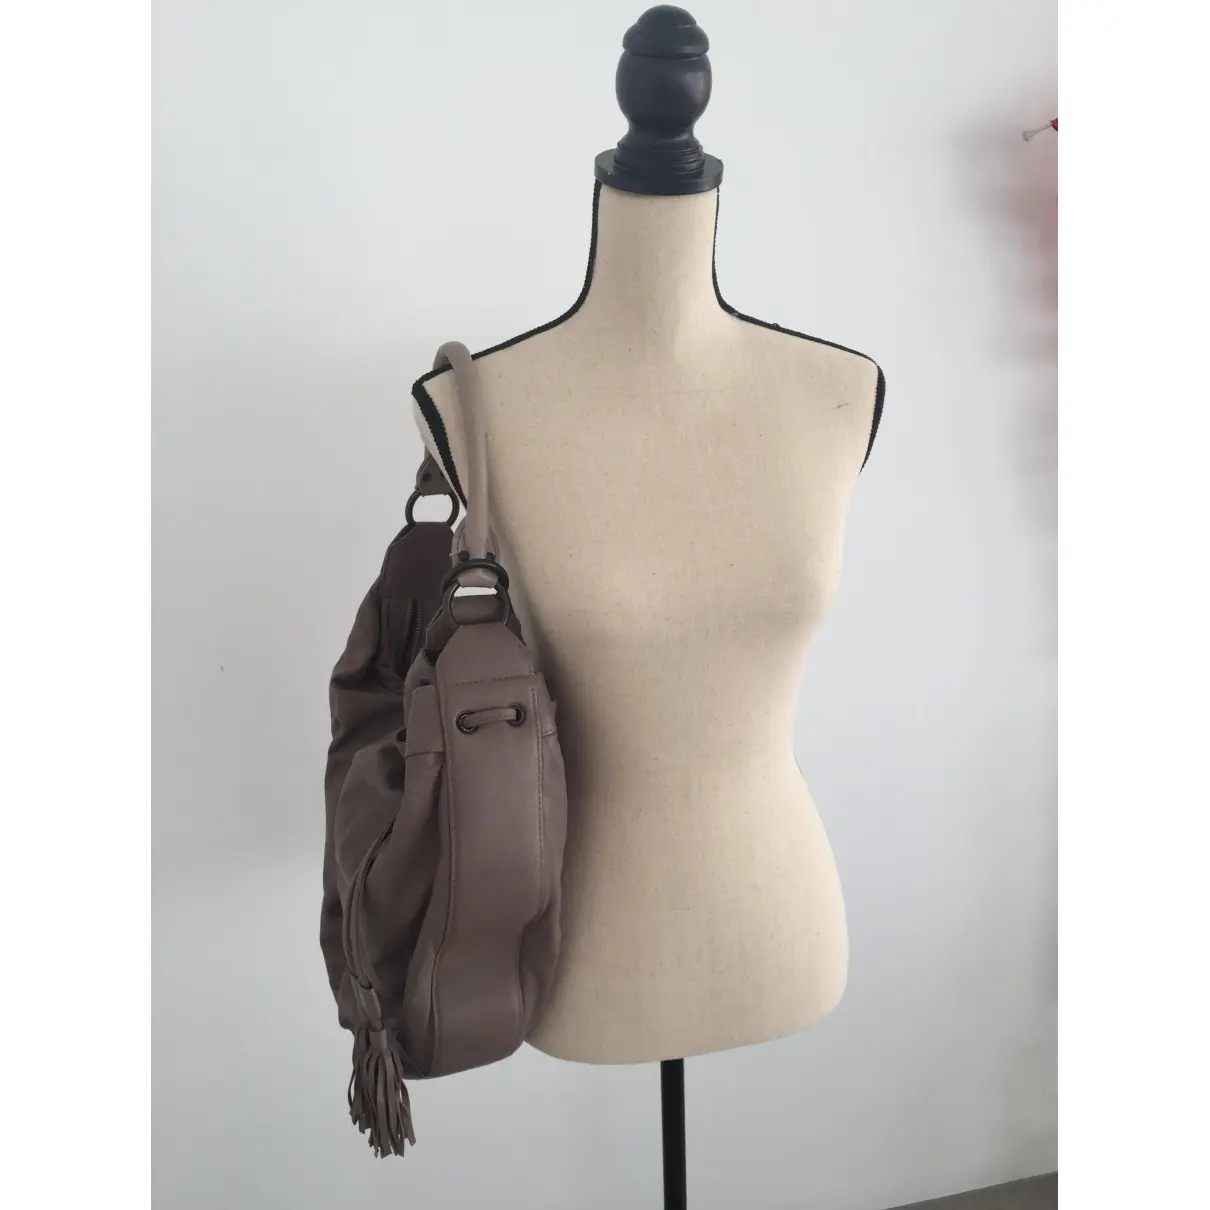 Buy Af Vandevorst Leather handbag online